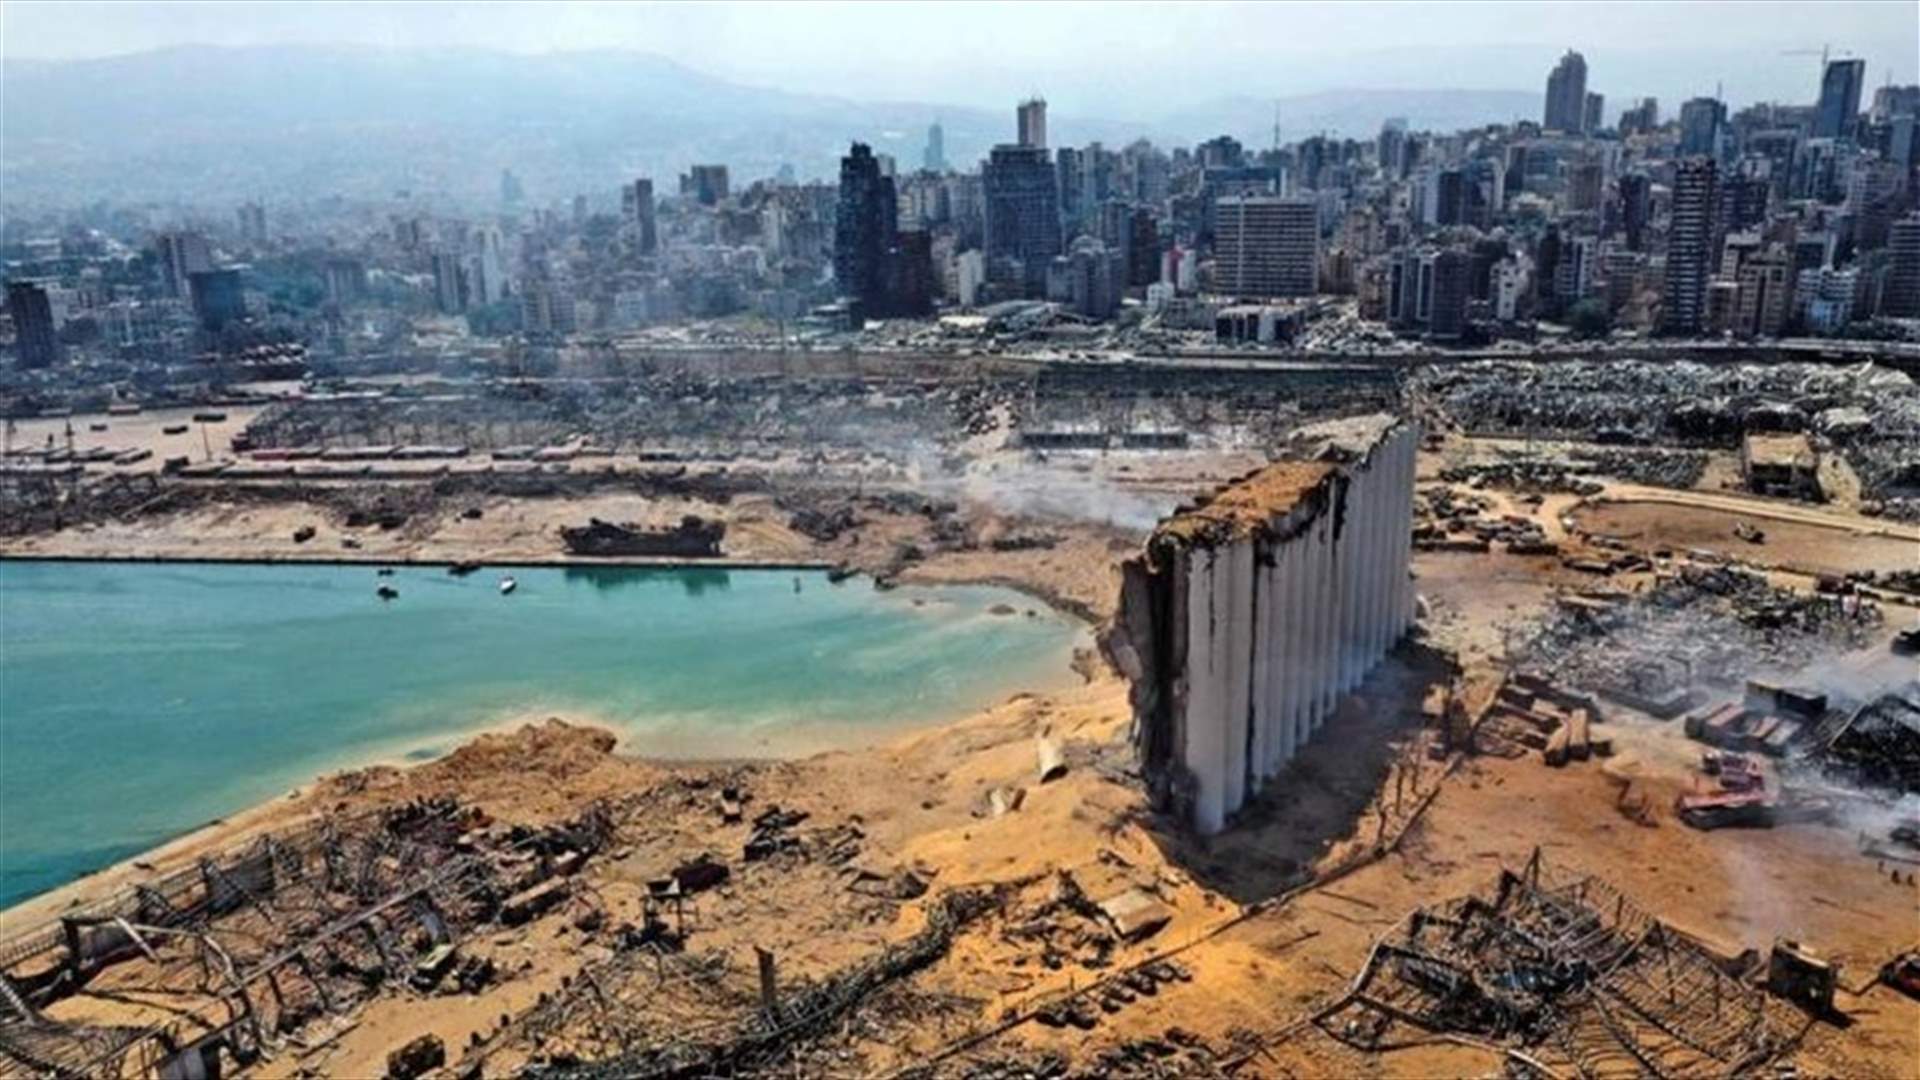 ما جديد التحقيقات في ملف انفجار مرفأ بيروت؟